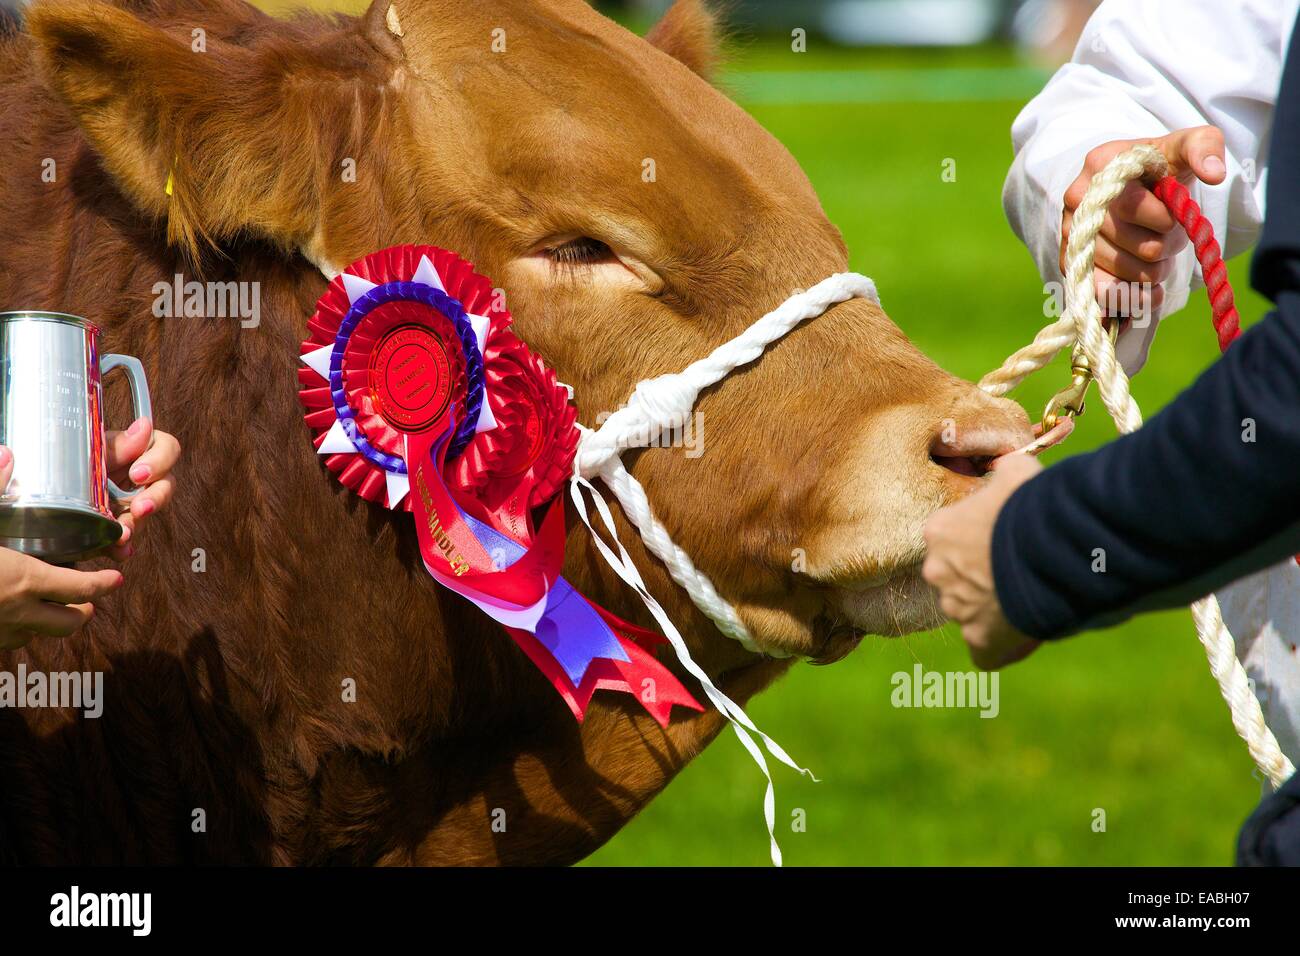 Taureau avec premier prix rosette à Hesket Newmarket Comice agricole, Hesket Newmarket, Cumbria, Angleterre, Royaume-Uni. Banque D'Images